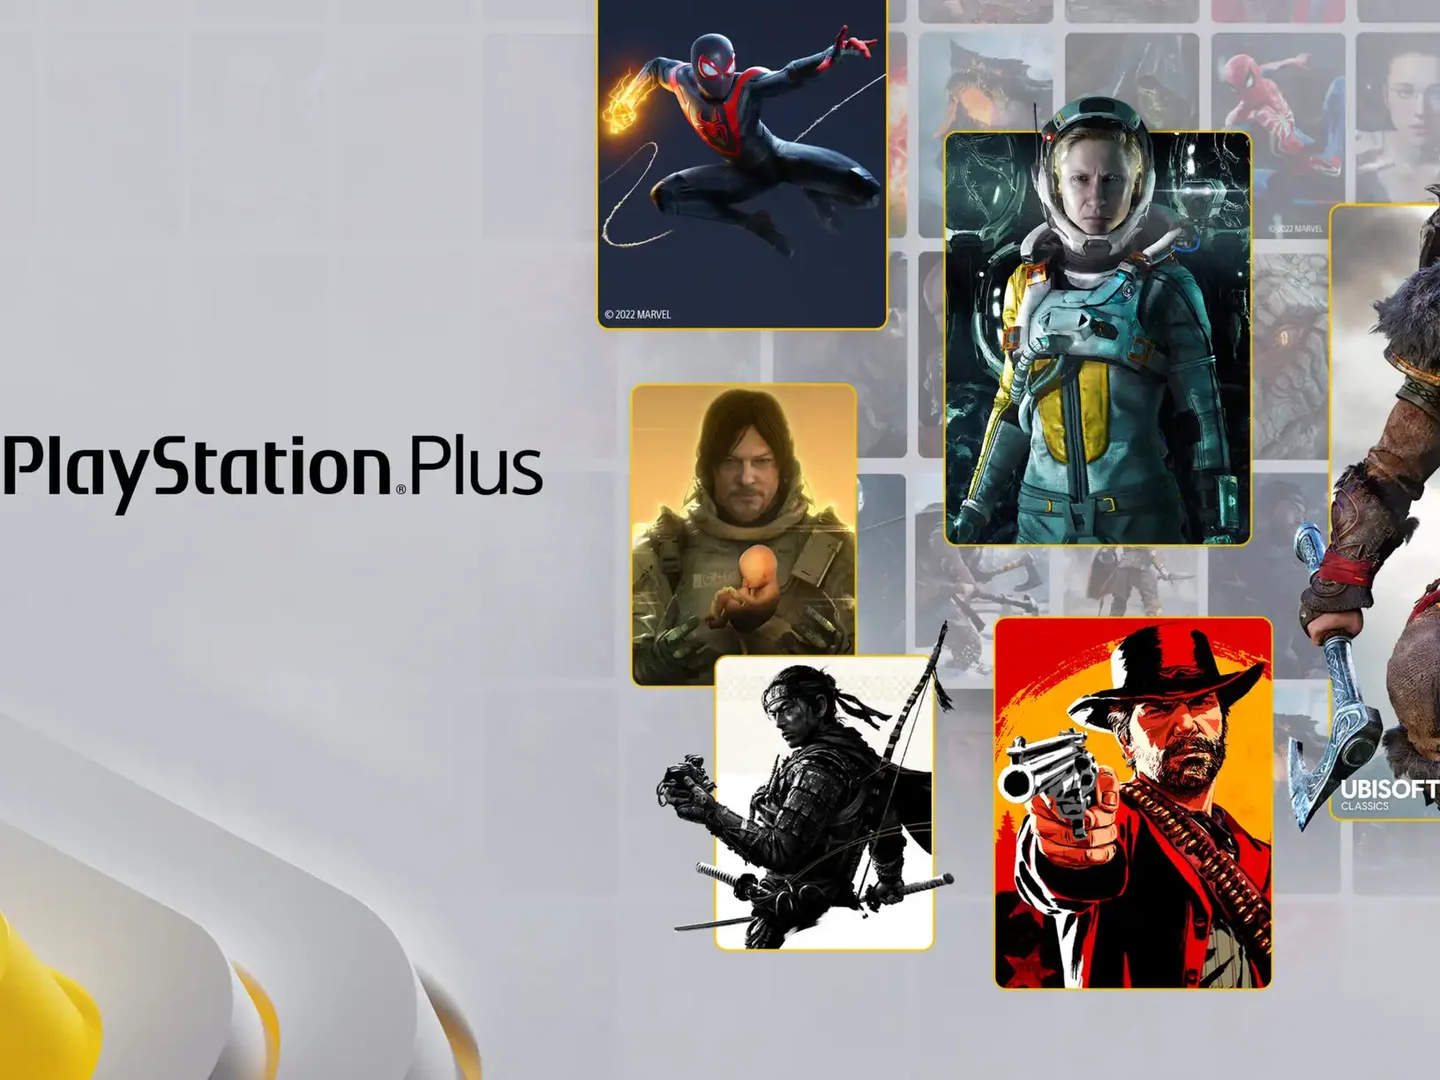 PlayStation Plus por fin podría habilitar el streaming de juegos para PS3  en Latinoamérica